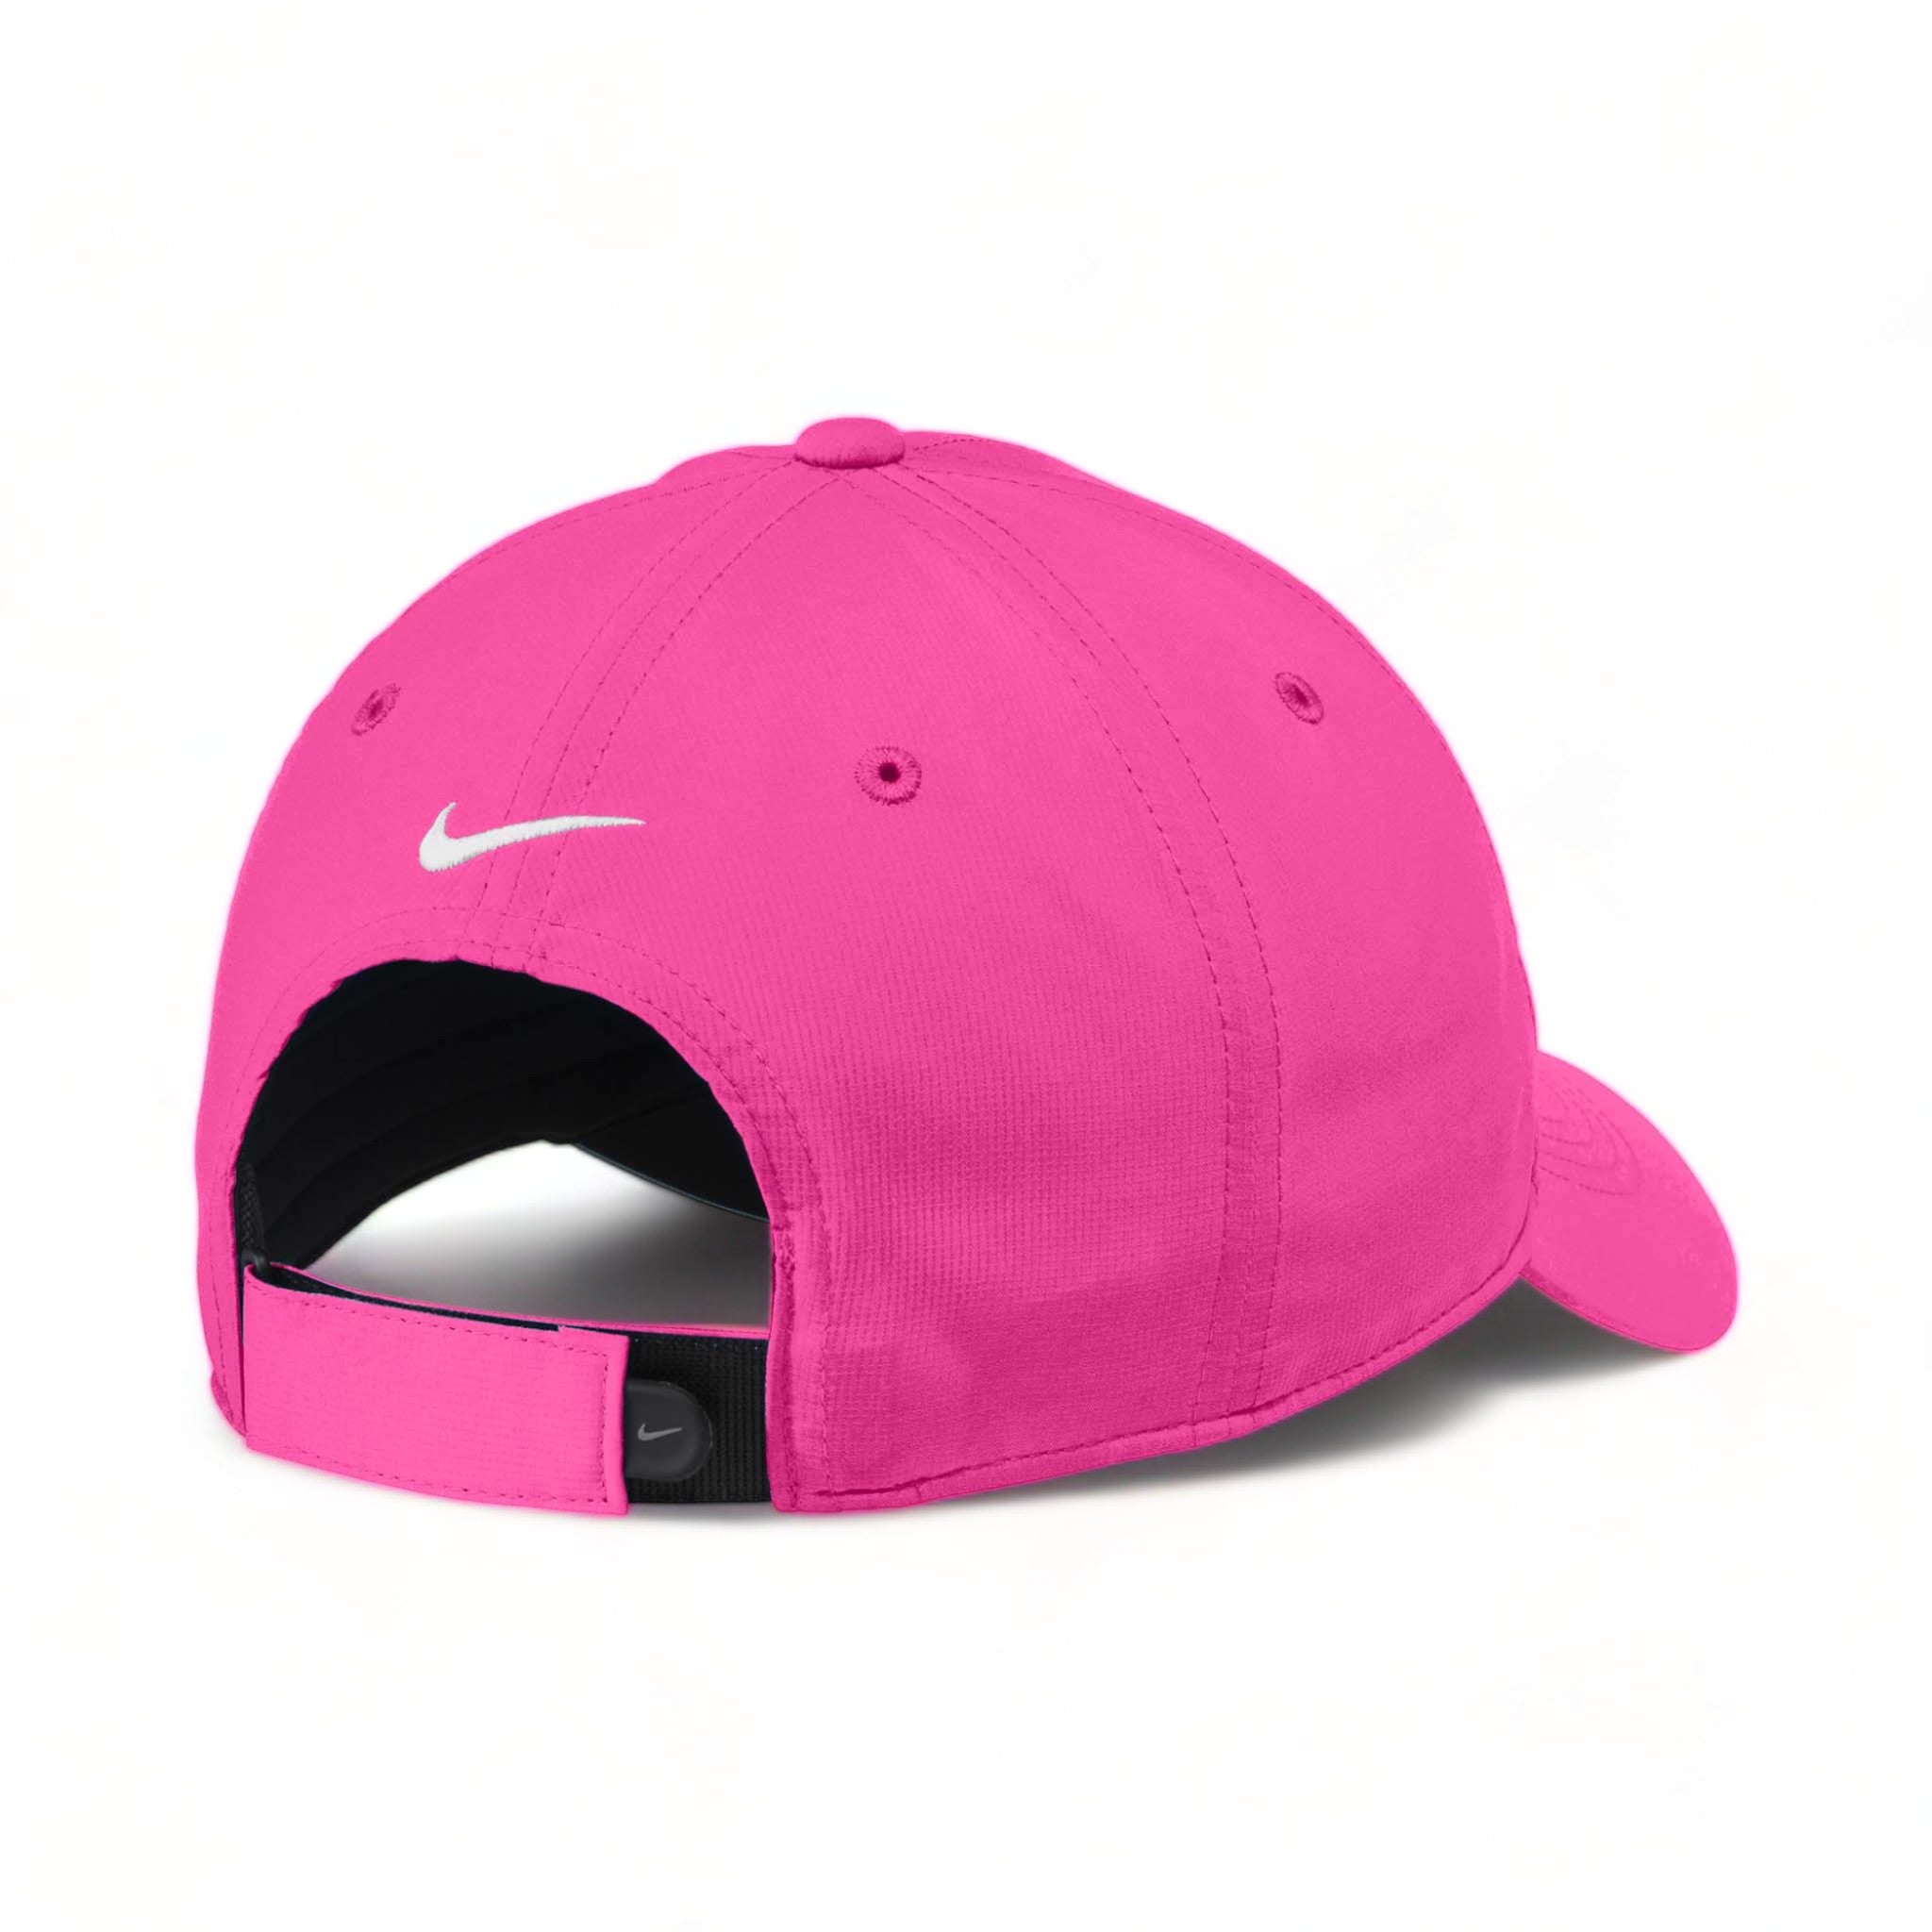 Back view of Nike NKFB6444 custom hat in vivid pink